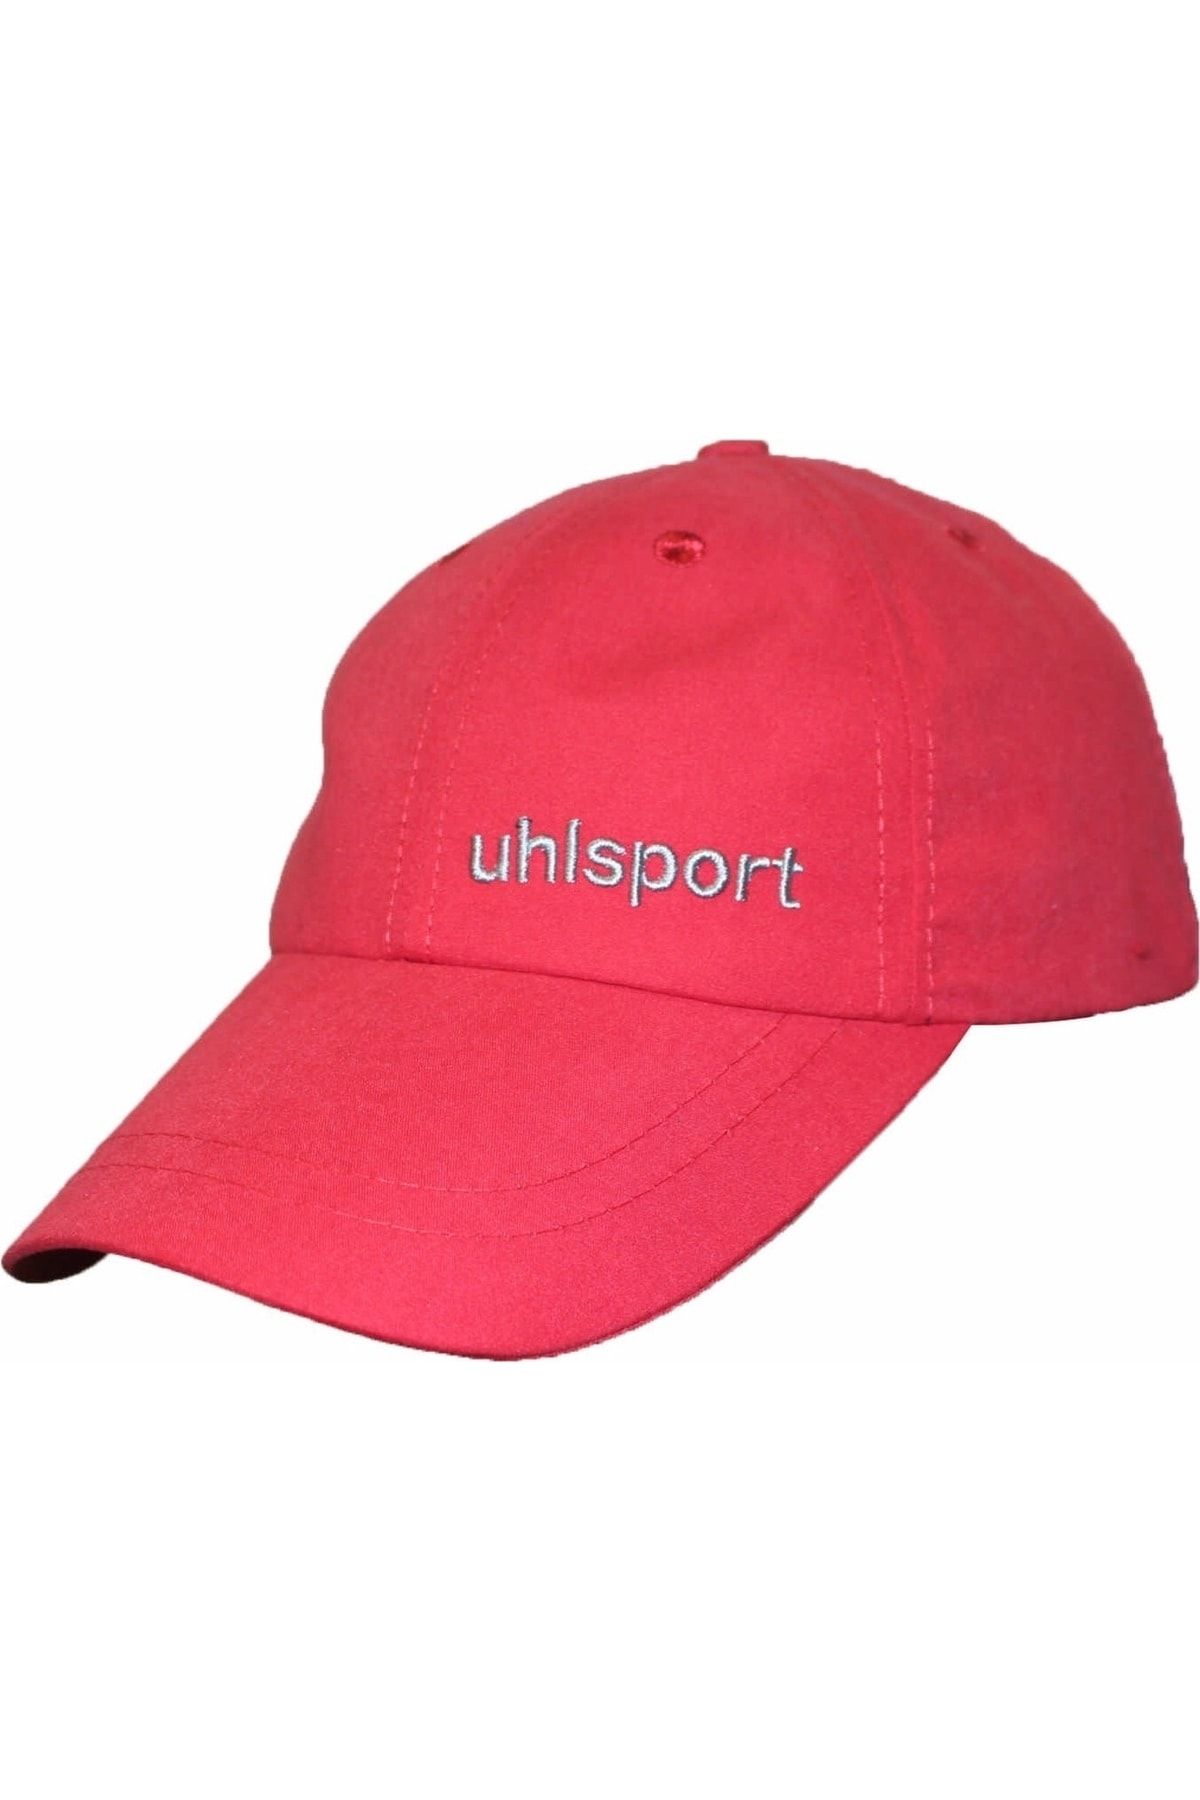 uhlsport 68 Mıcro Leo Unisex Şapka Kırmızı 8201010